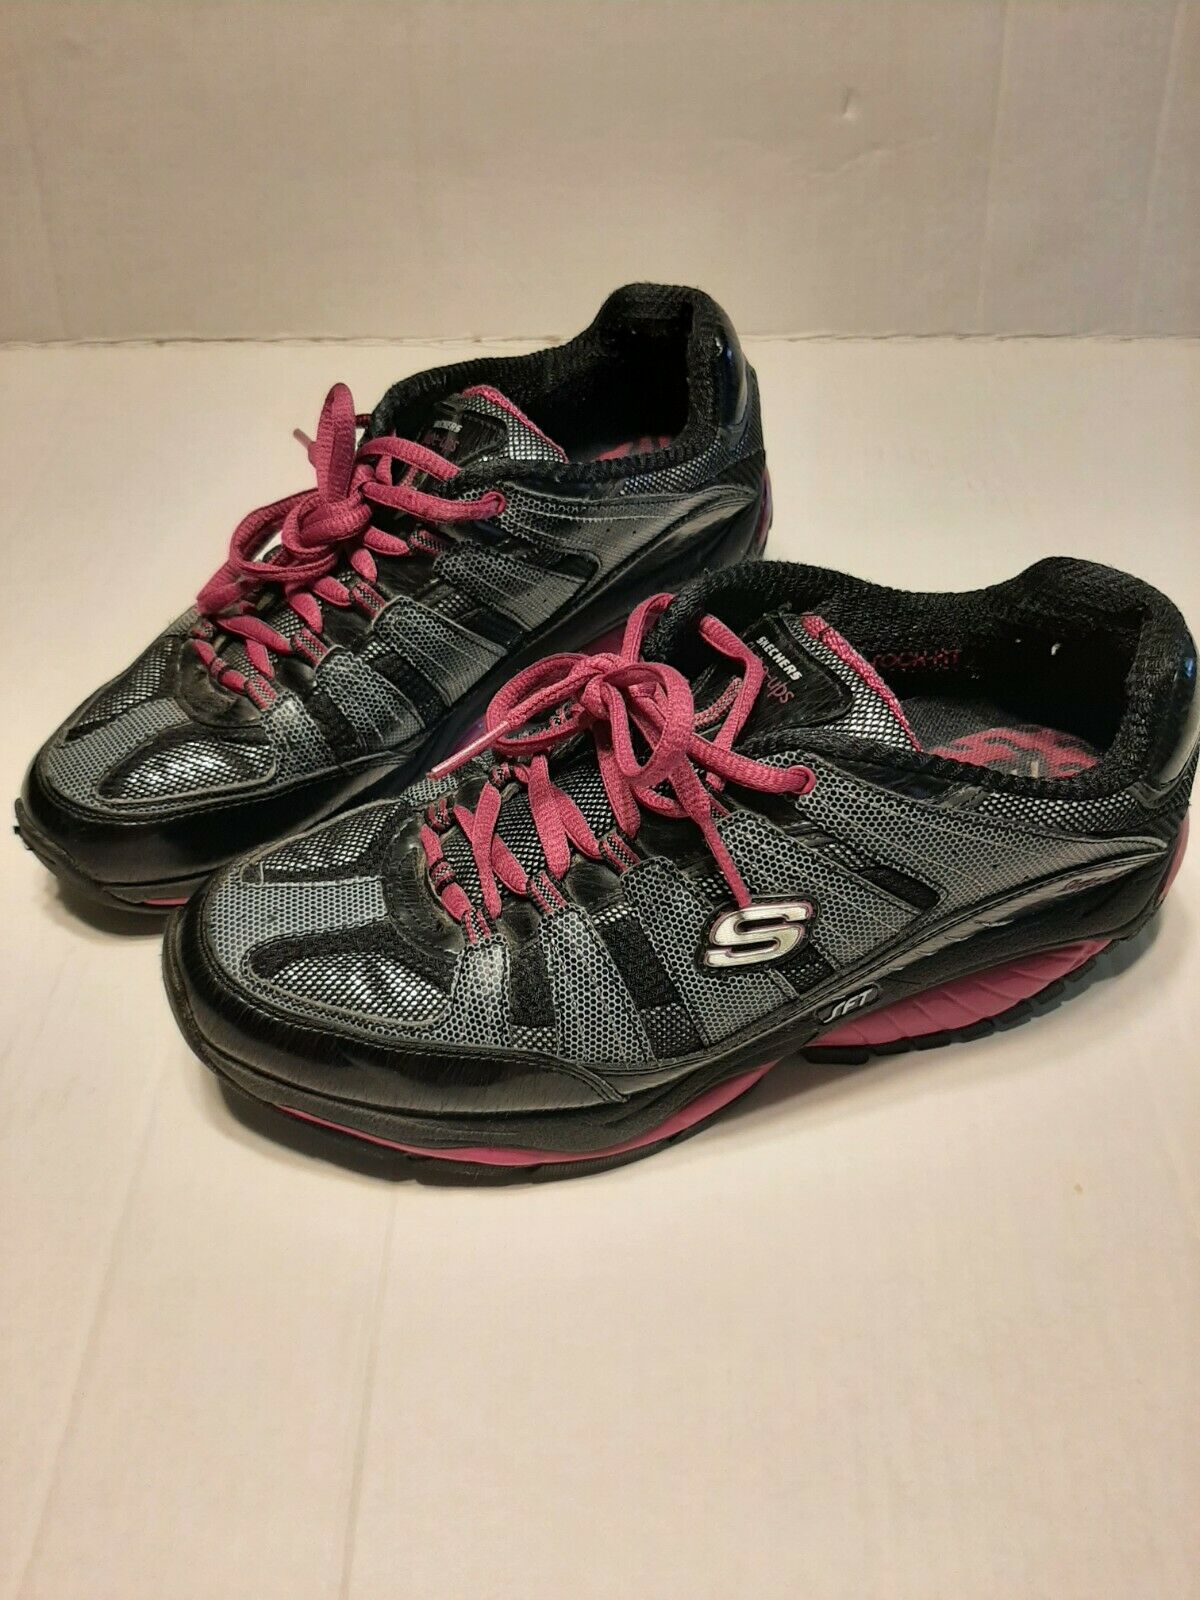 Skechers Shape Ups SFT Walking Shoes Black Gray Pink 12340 - Women’s Size 8.5